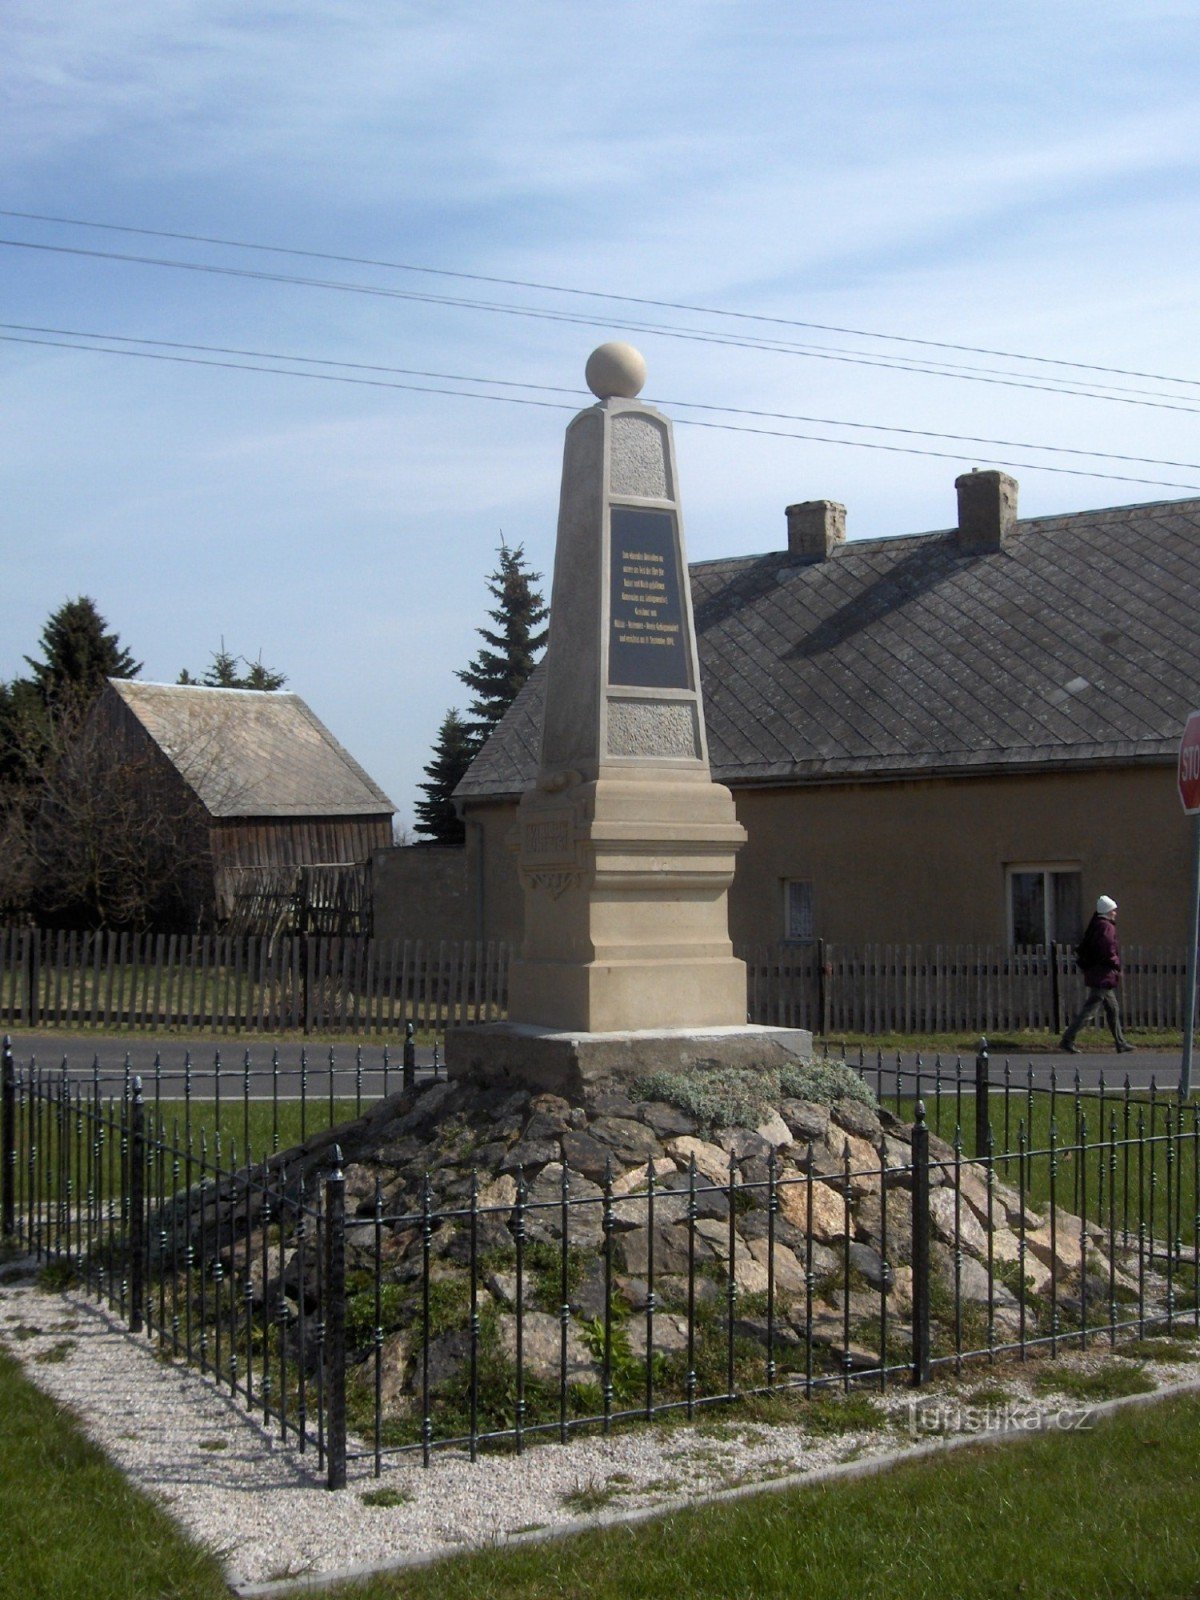 Μνημείο στο Nová Ves στα βουνά